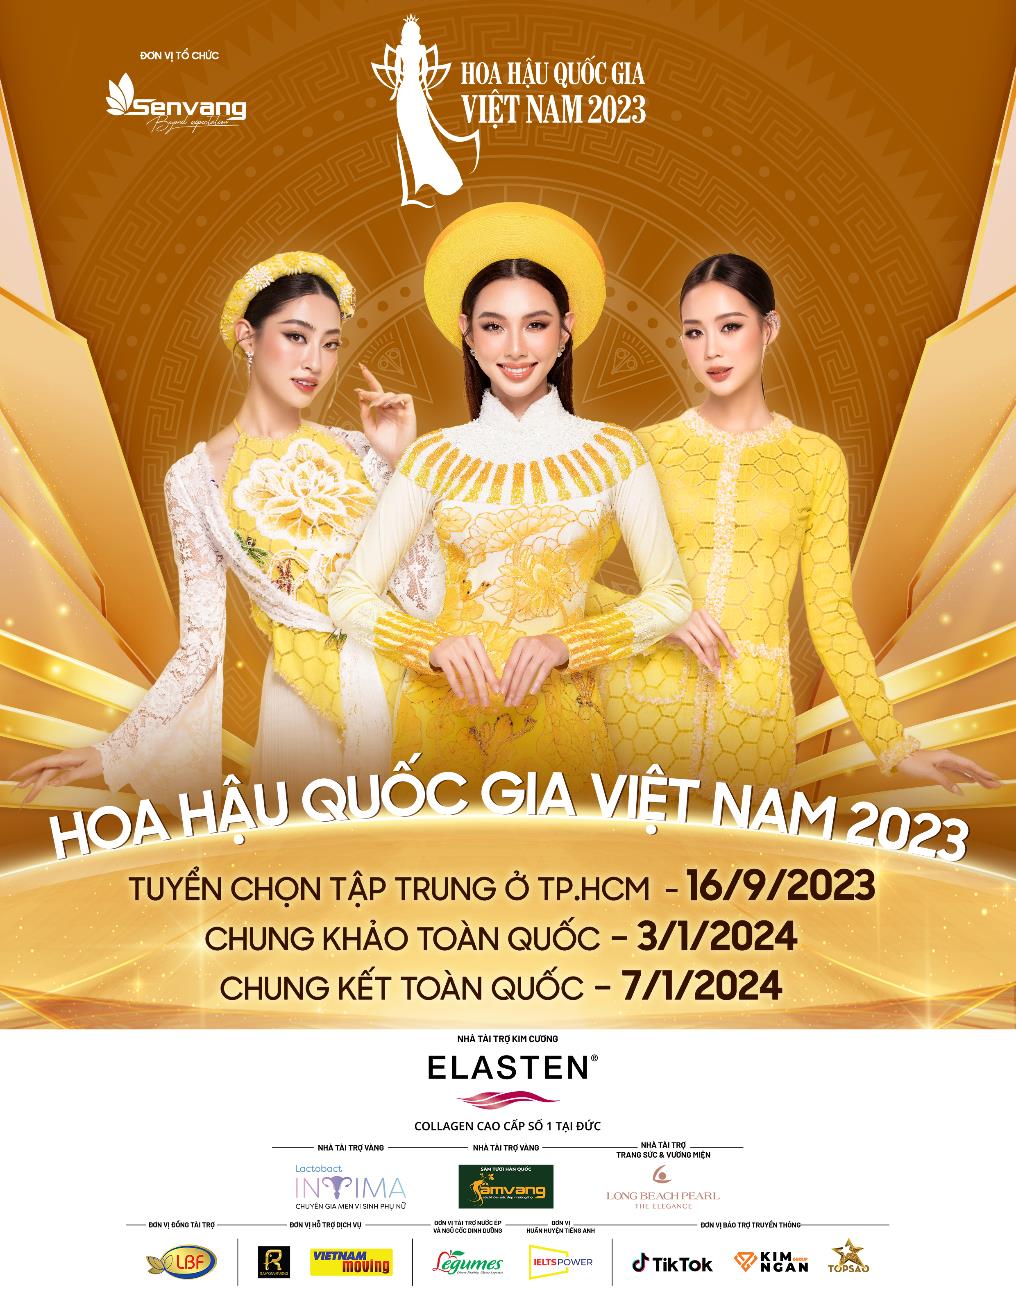 Cuộc thi Hoa hậu Quốc gia Việt Nam khởi động với bộ ảnh chính thức của 3 đại sứ Thùy Tiên, Lương Thùy Linh, Bảo Ngọc - Ảnh 1.